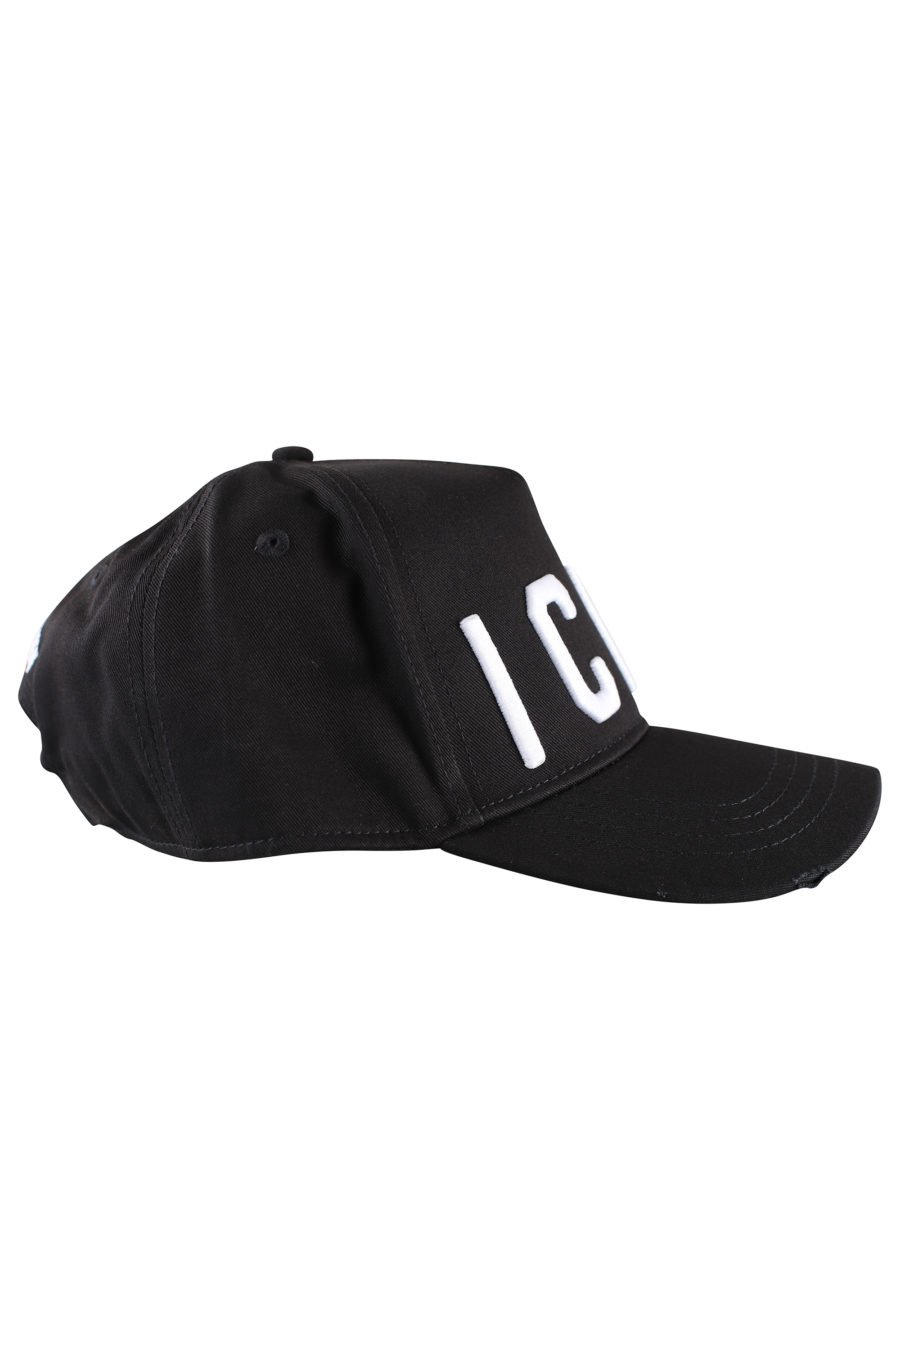 Verstellbare schwarze Kappe mit weißem "Icon"-Logo - IMG 9994